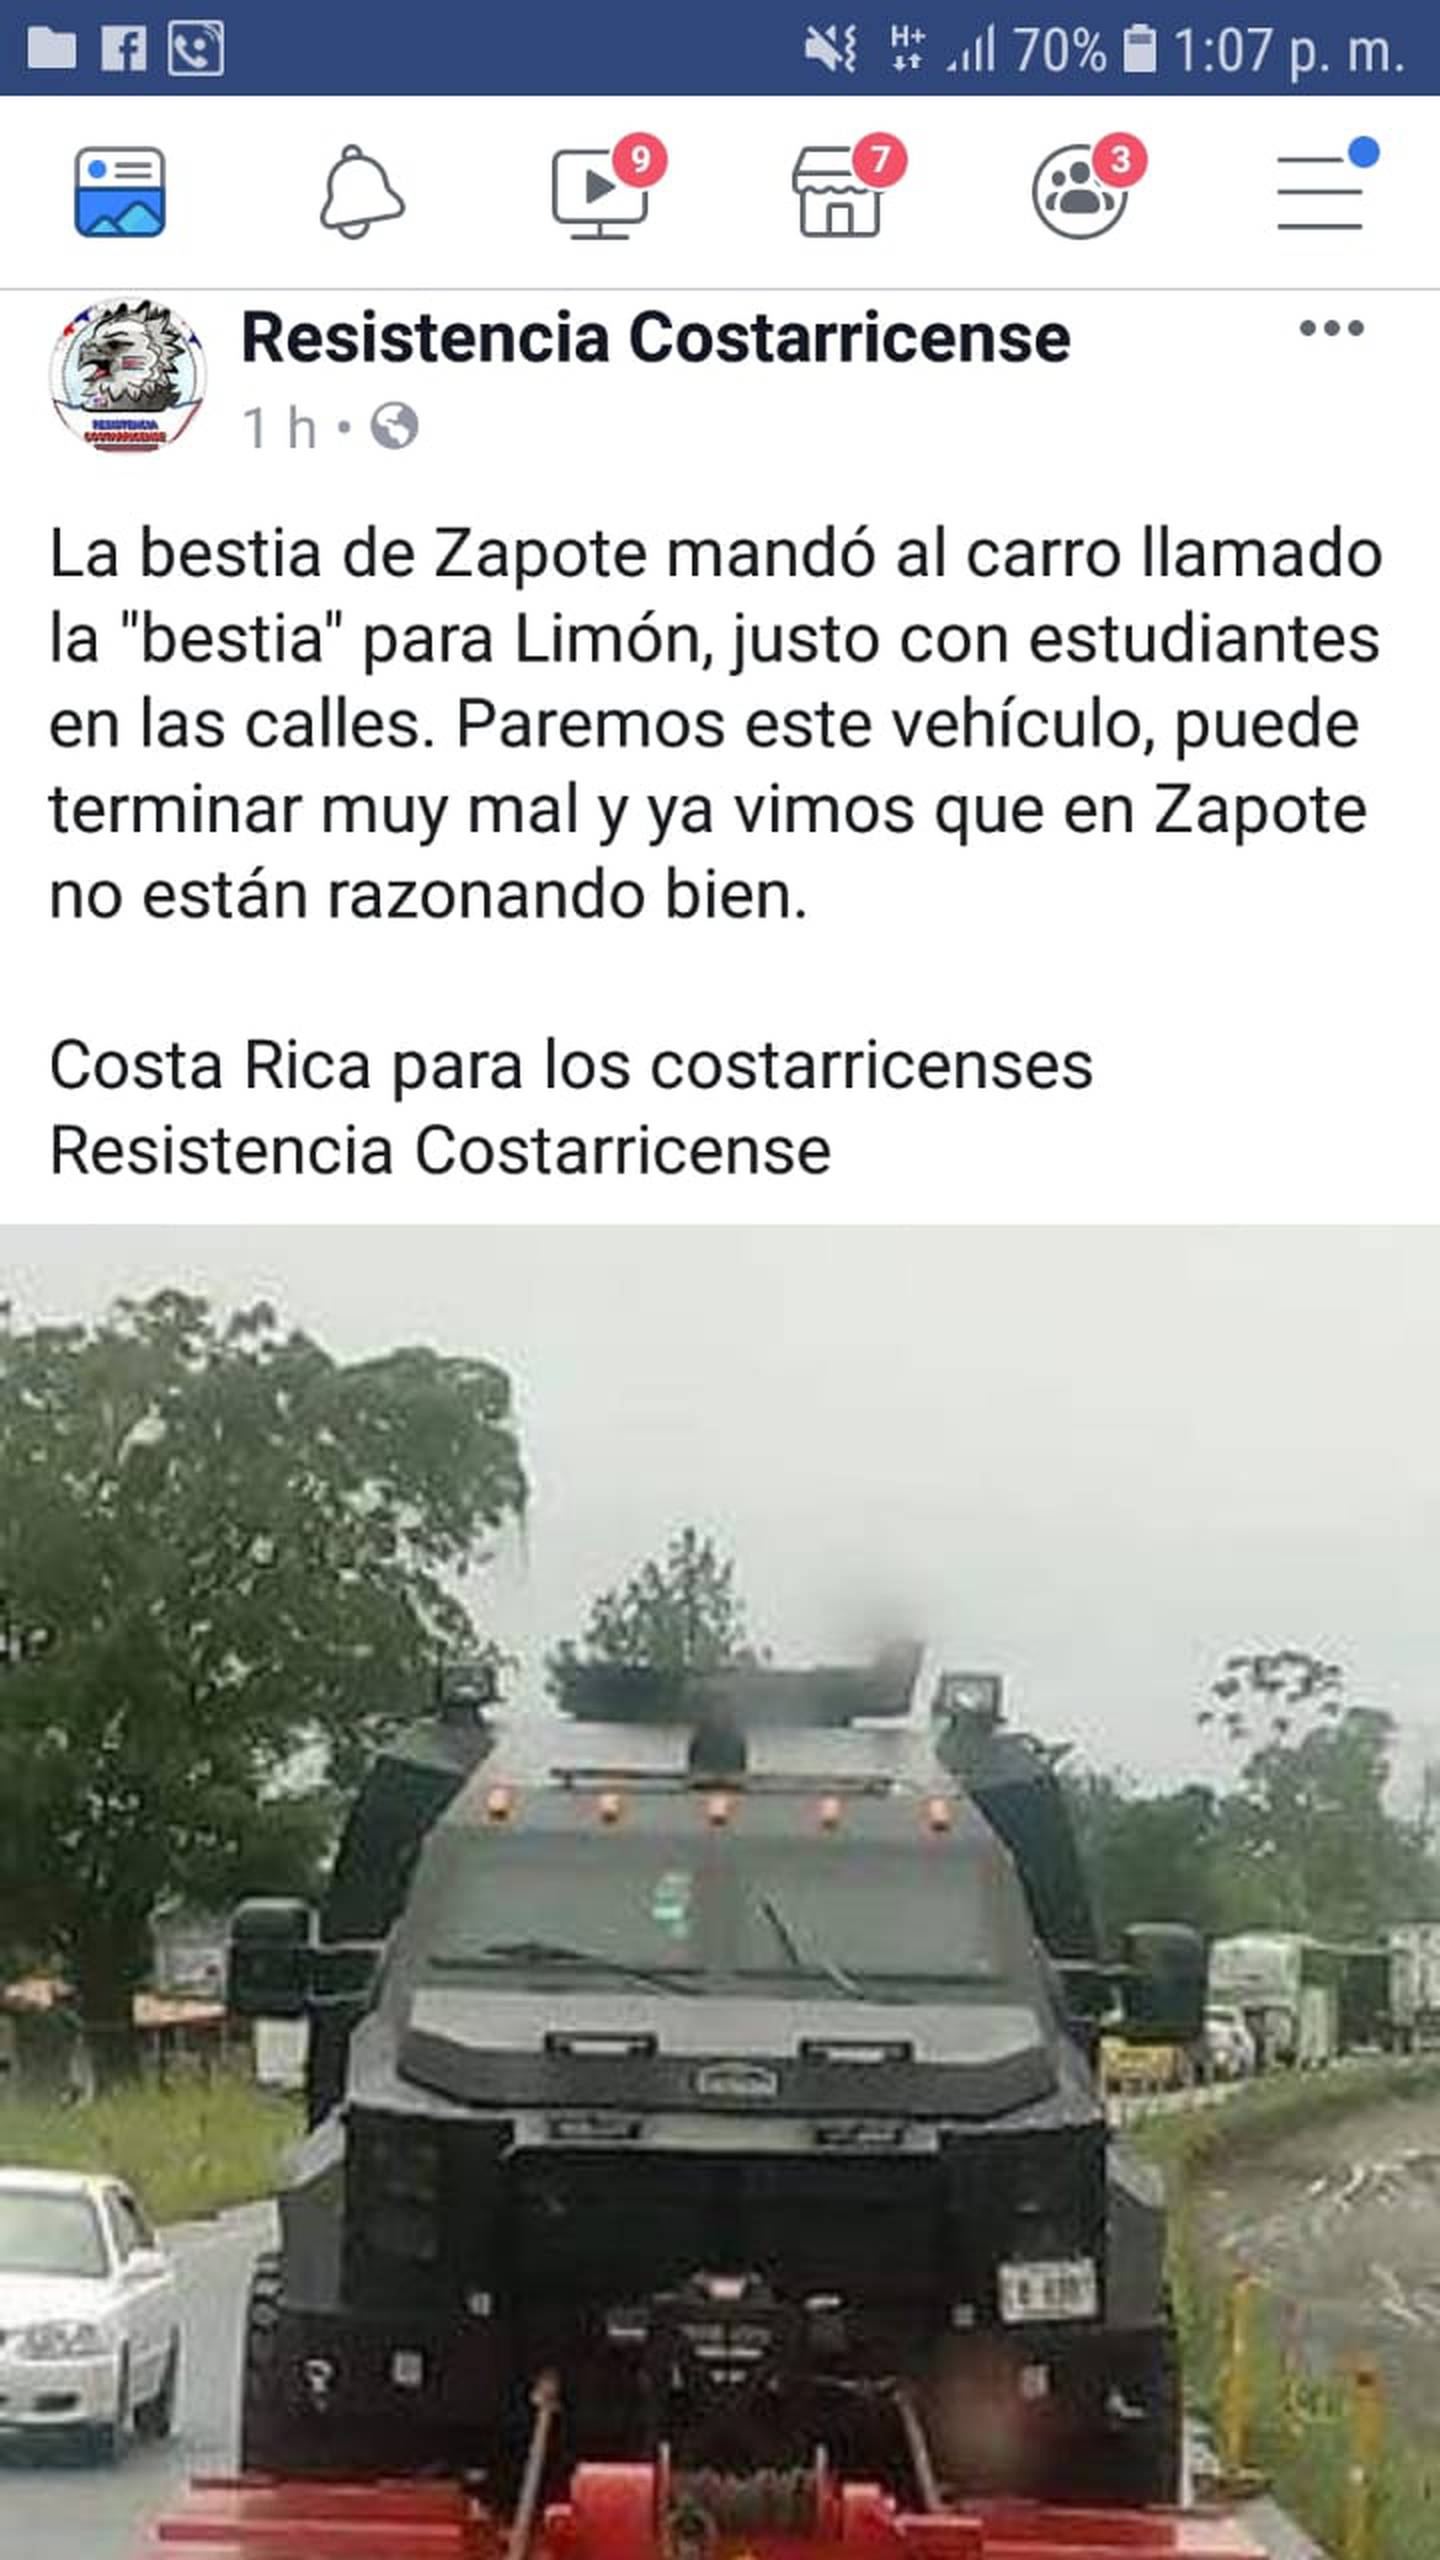 El sitio de Facebook Resistencia Costa Rica dijo que al movimiento se había sumado un vehículo blindado conocido como La Bestia. Se trata de un Ford modelo F3350, propiedad del Organismo de Investigación Judicial (OIJ).